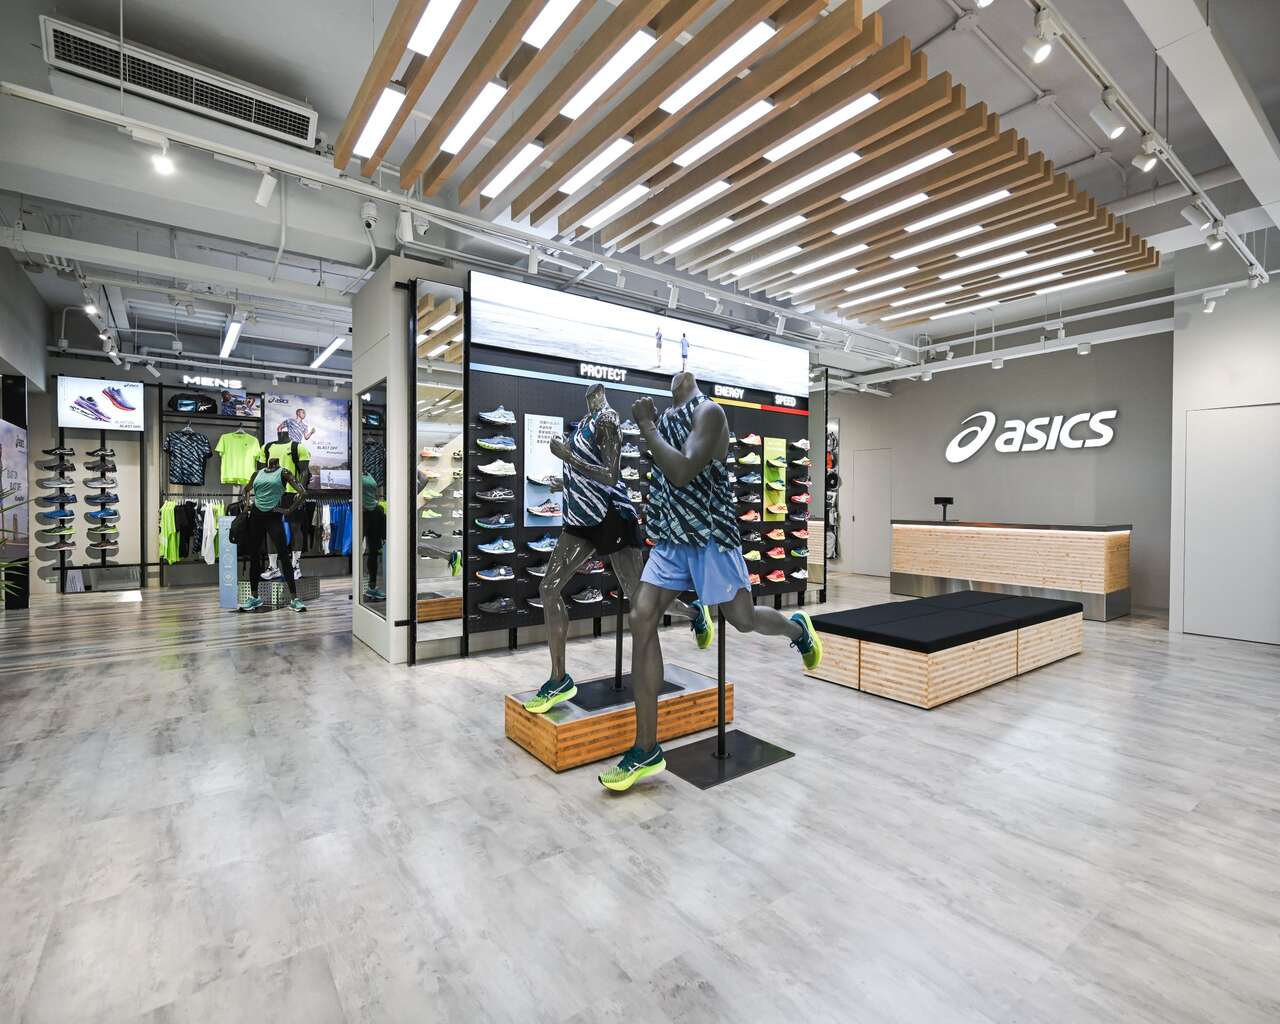 ASICS台北旗艦店全新裝潢結合了日系風格及科技元素給予進店挑選的民眾更輕鬆舒適的購物環境。官方提供